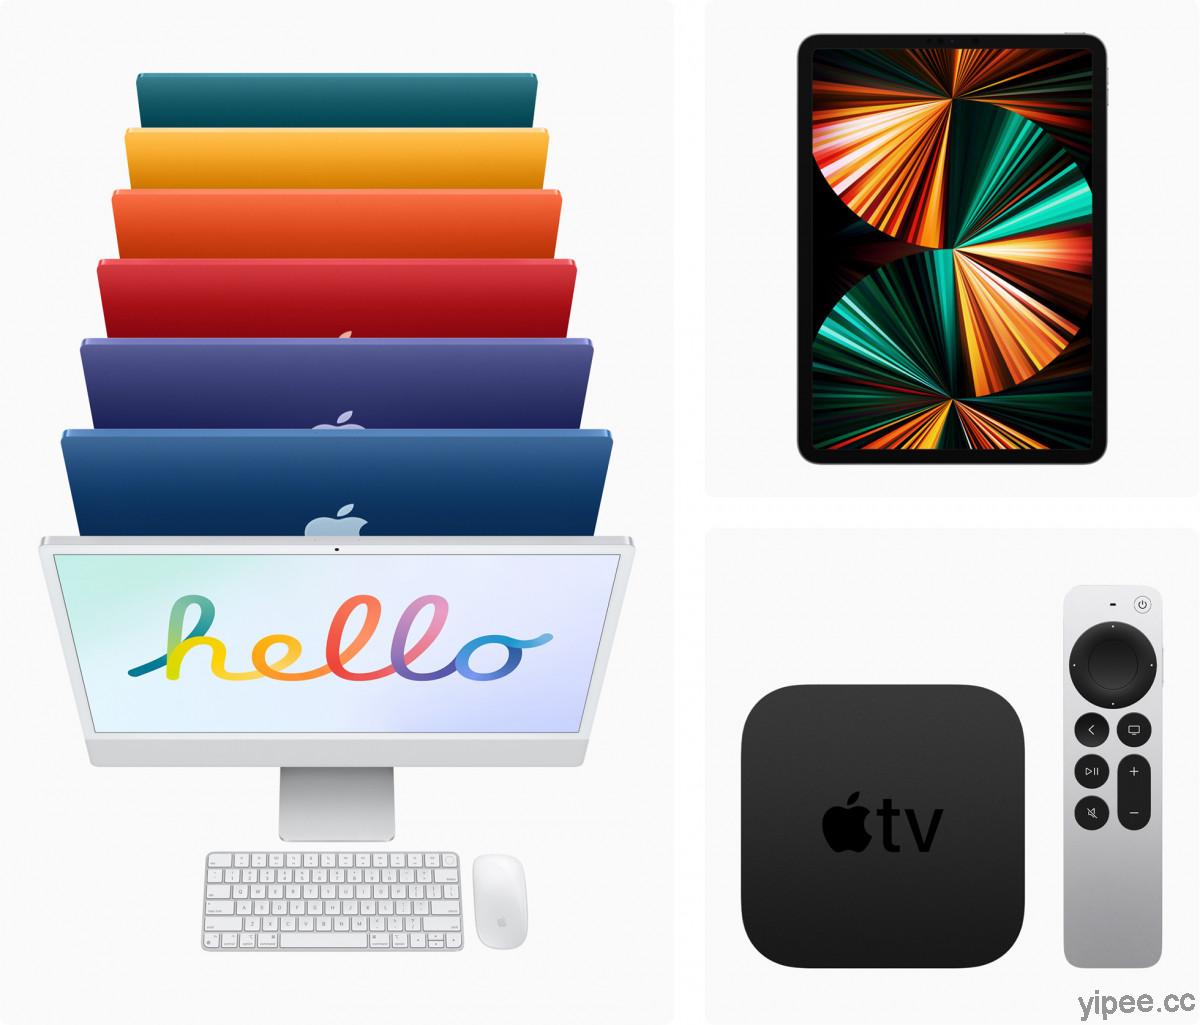 iMac、iPad Pro 與 Apple TV 4K 將於  5 月 21 日在美國、香港等地上市，就是少了台灣！